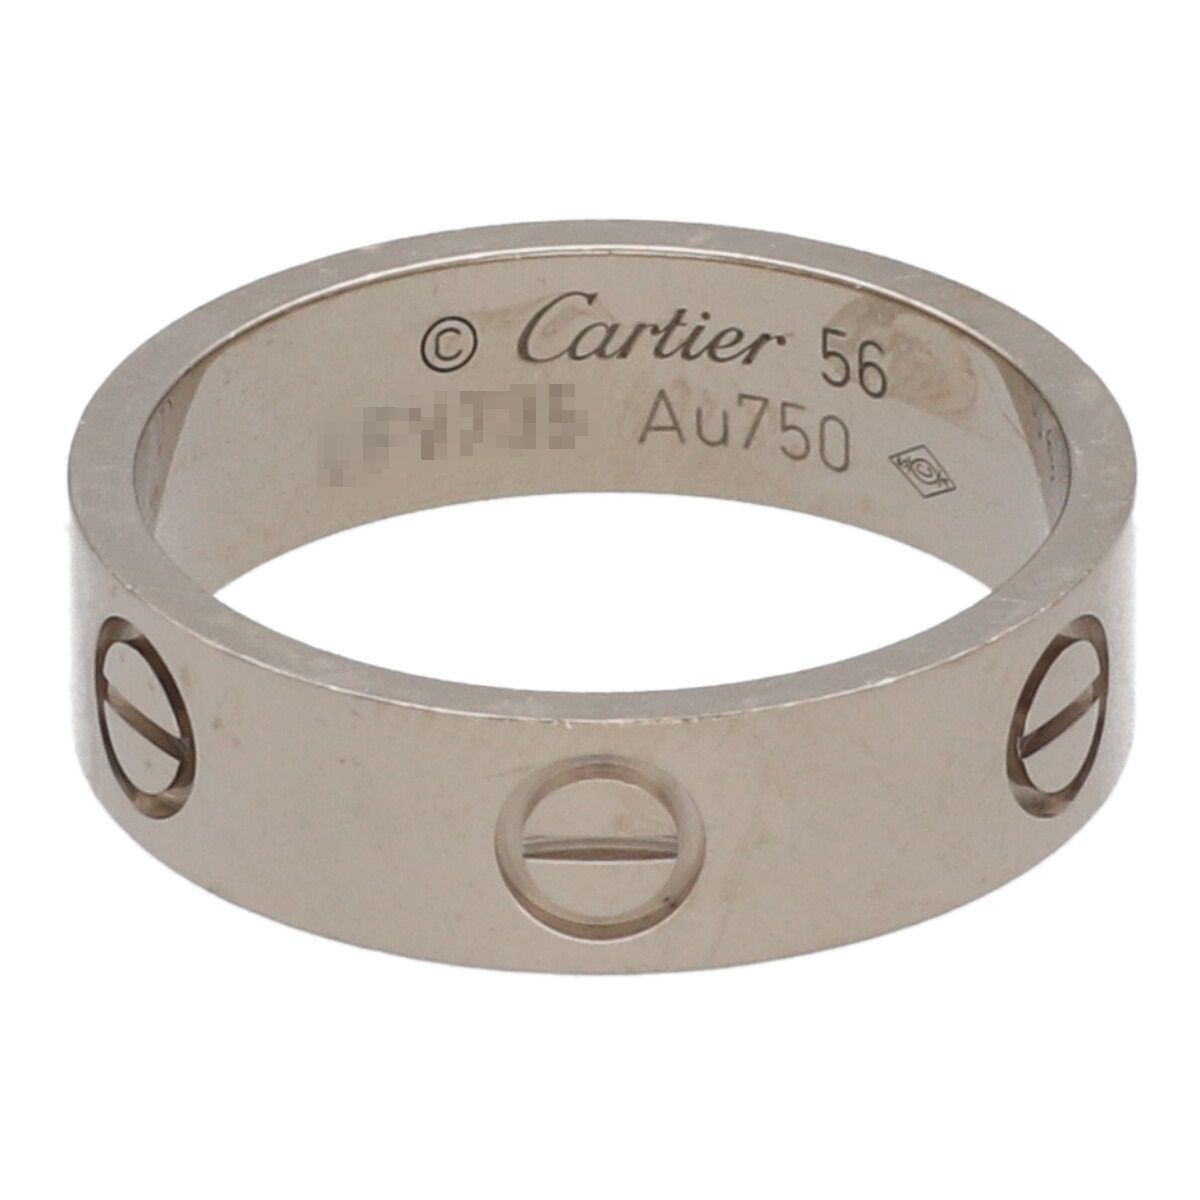 【中古】 Cartier カルティエ LOVE リング 56 B4084700 K18WG ホワイトゴールド ラブ リング 23019213 RS_画像3